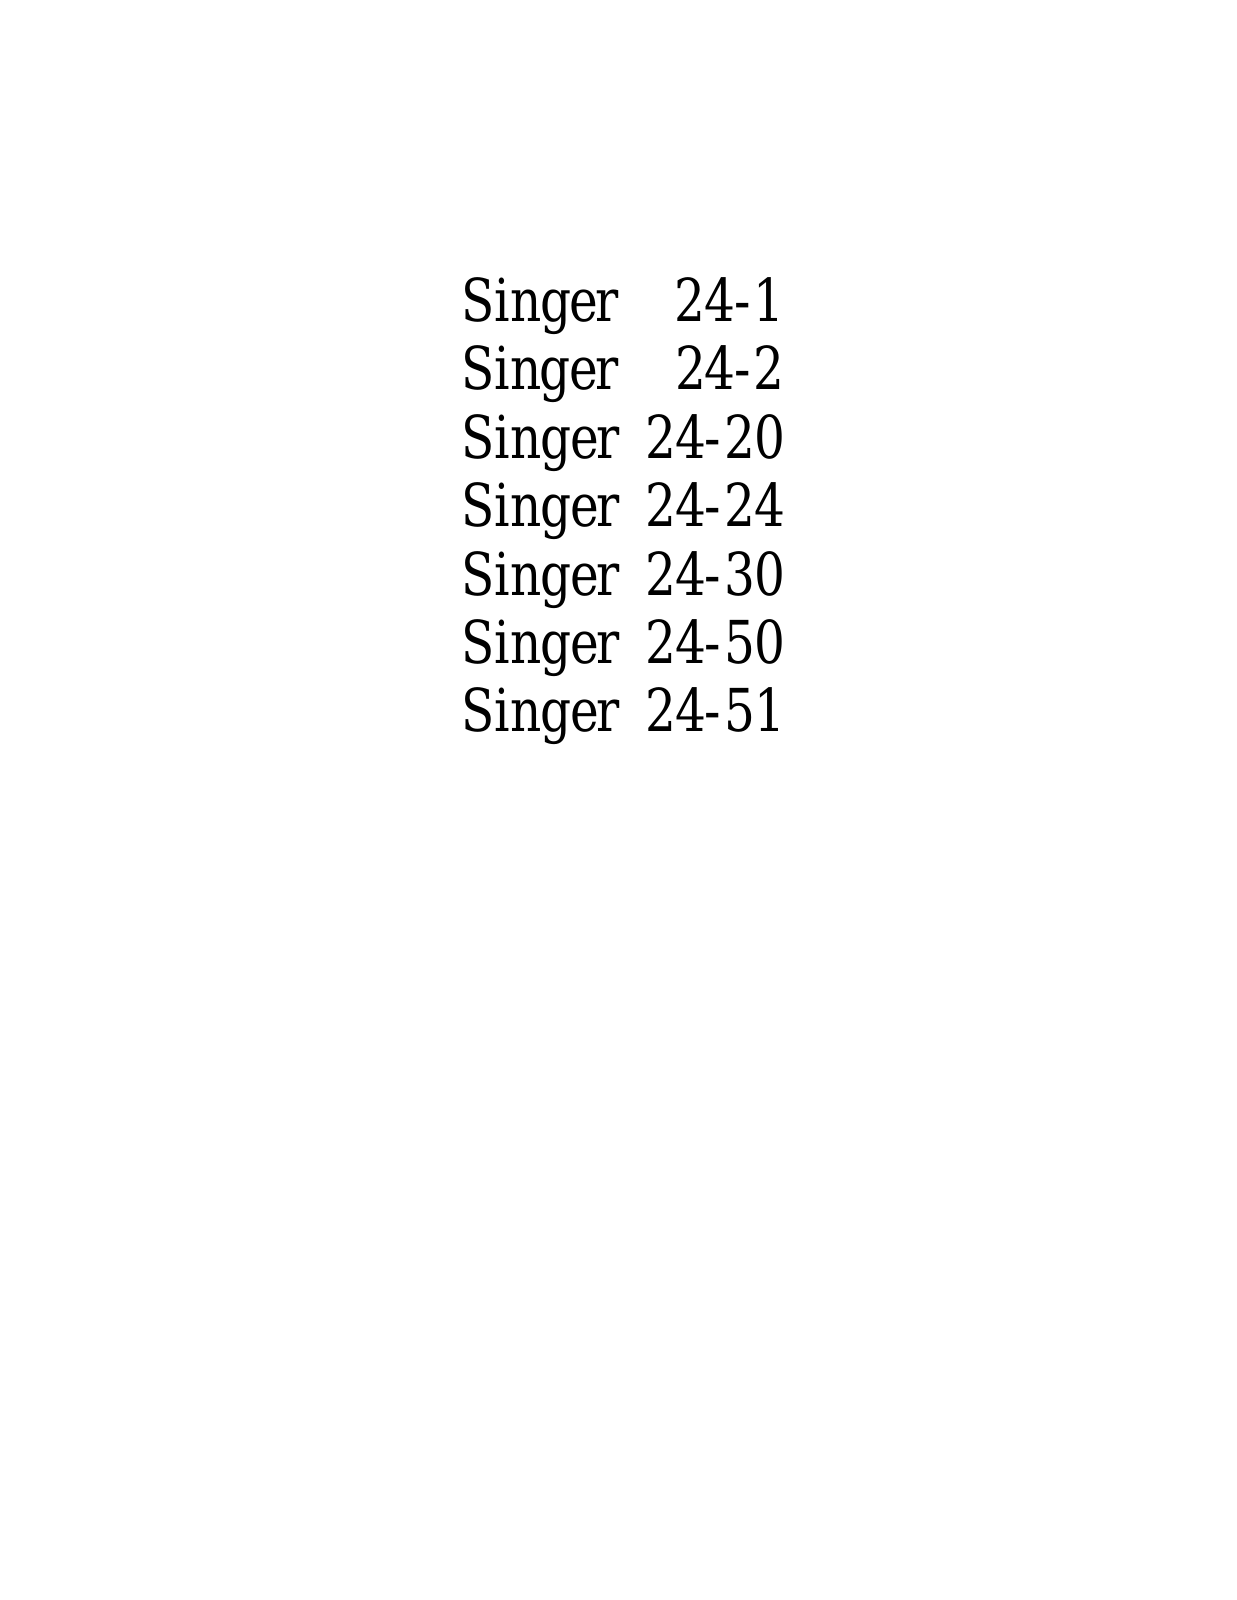 SINGER 24-1, 24-2, 24-20, 24-24, 24-30 Parts List